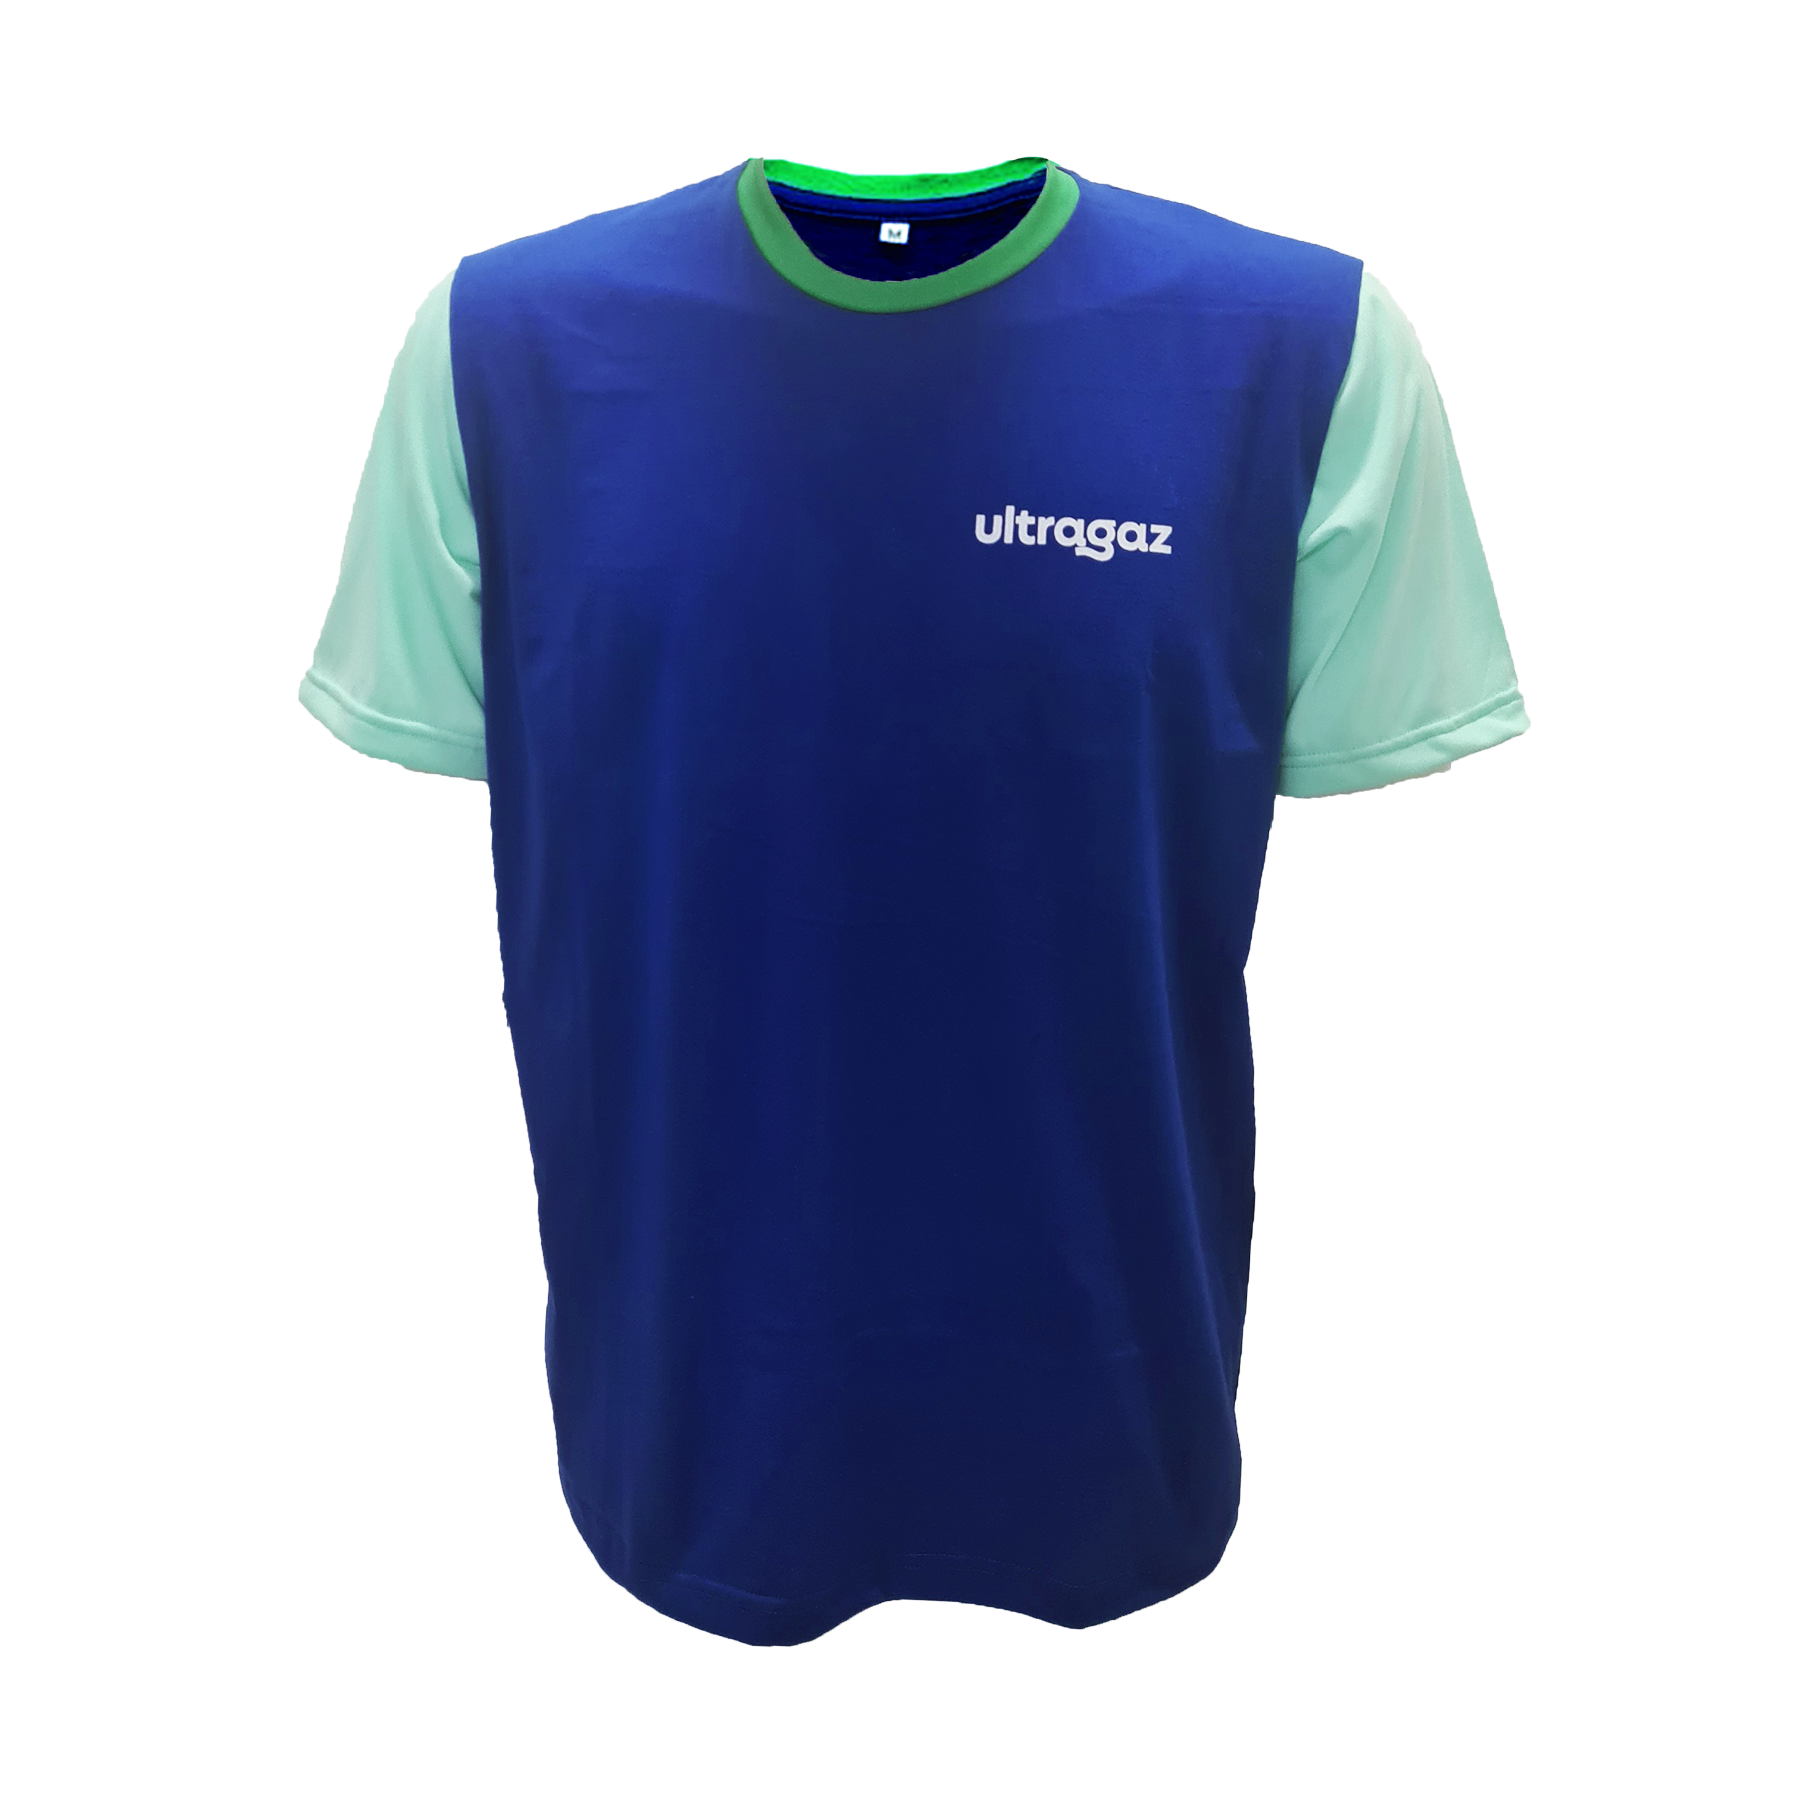 Camiseta ULTRAGAZ-Novo Modelo - Sea Cold Confecções